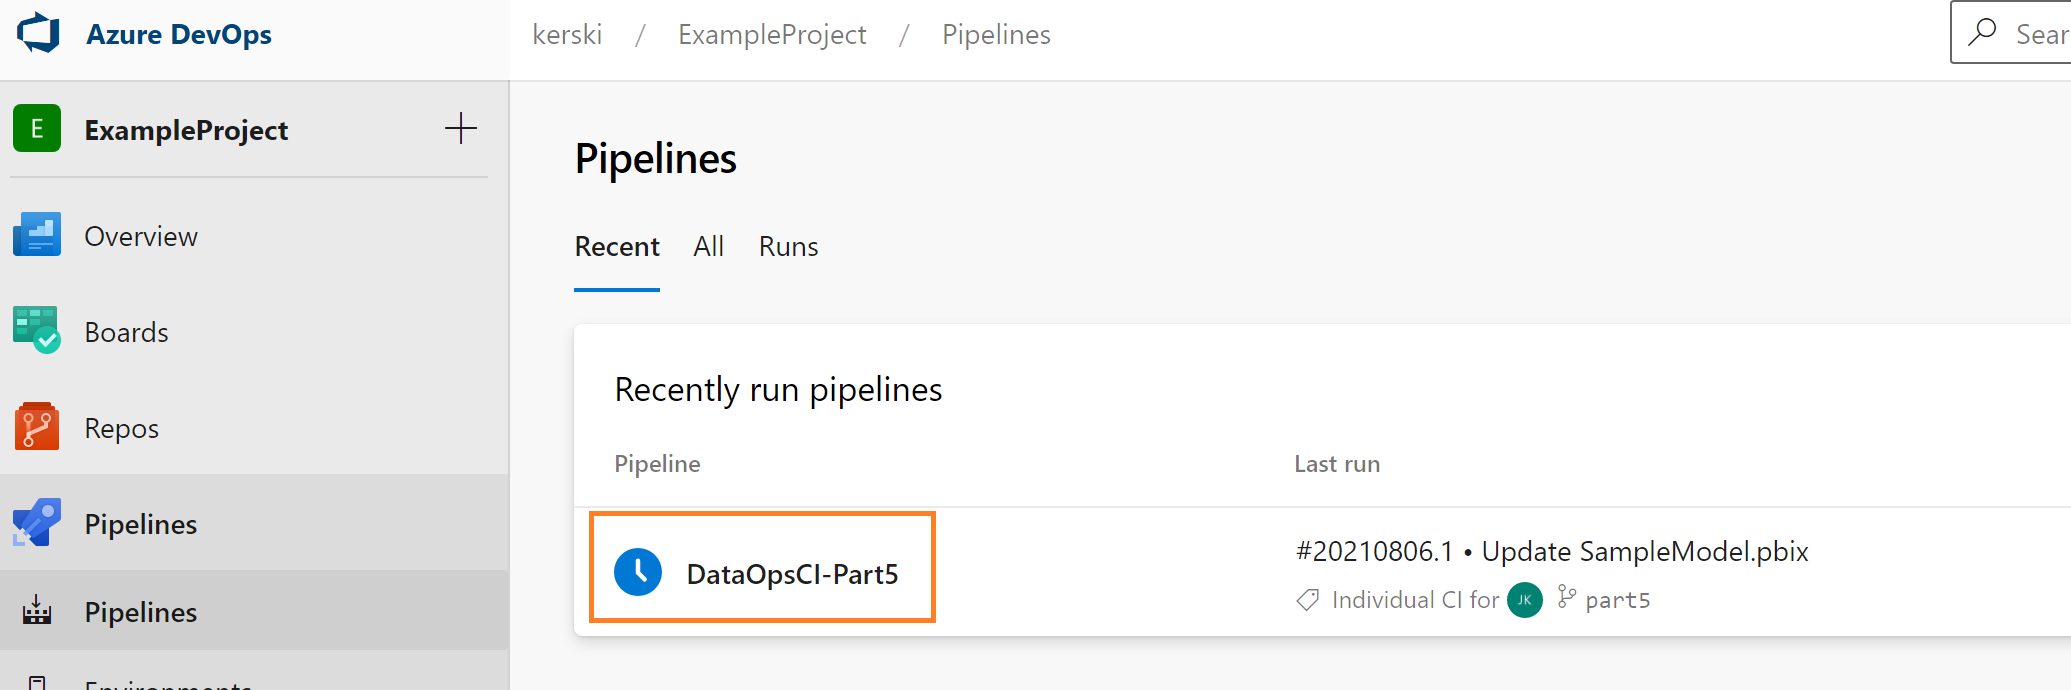 Example of Pipeline in Azure Devops